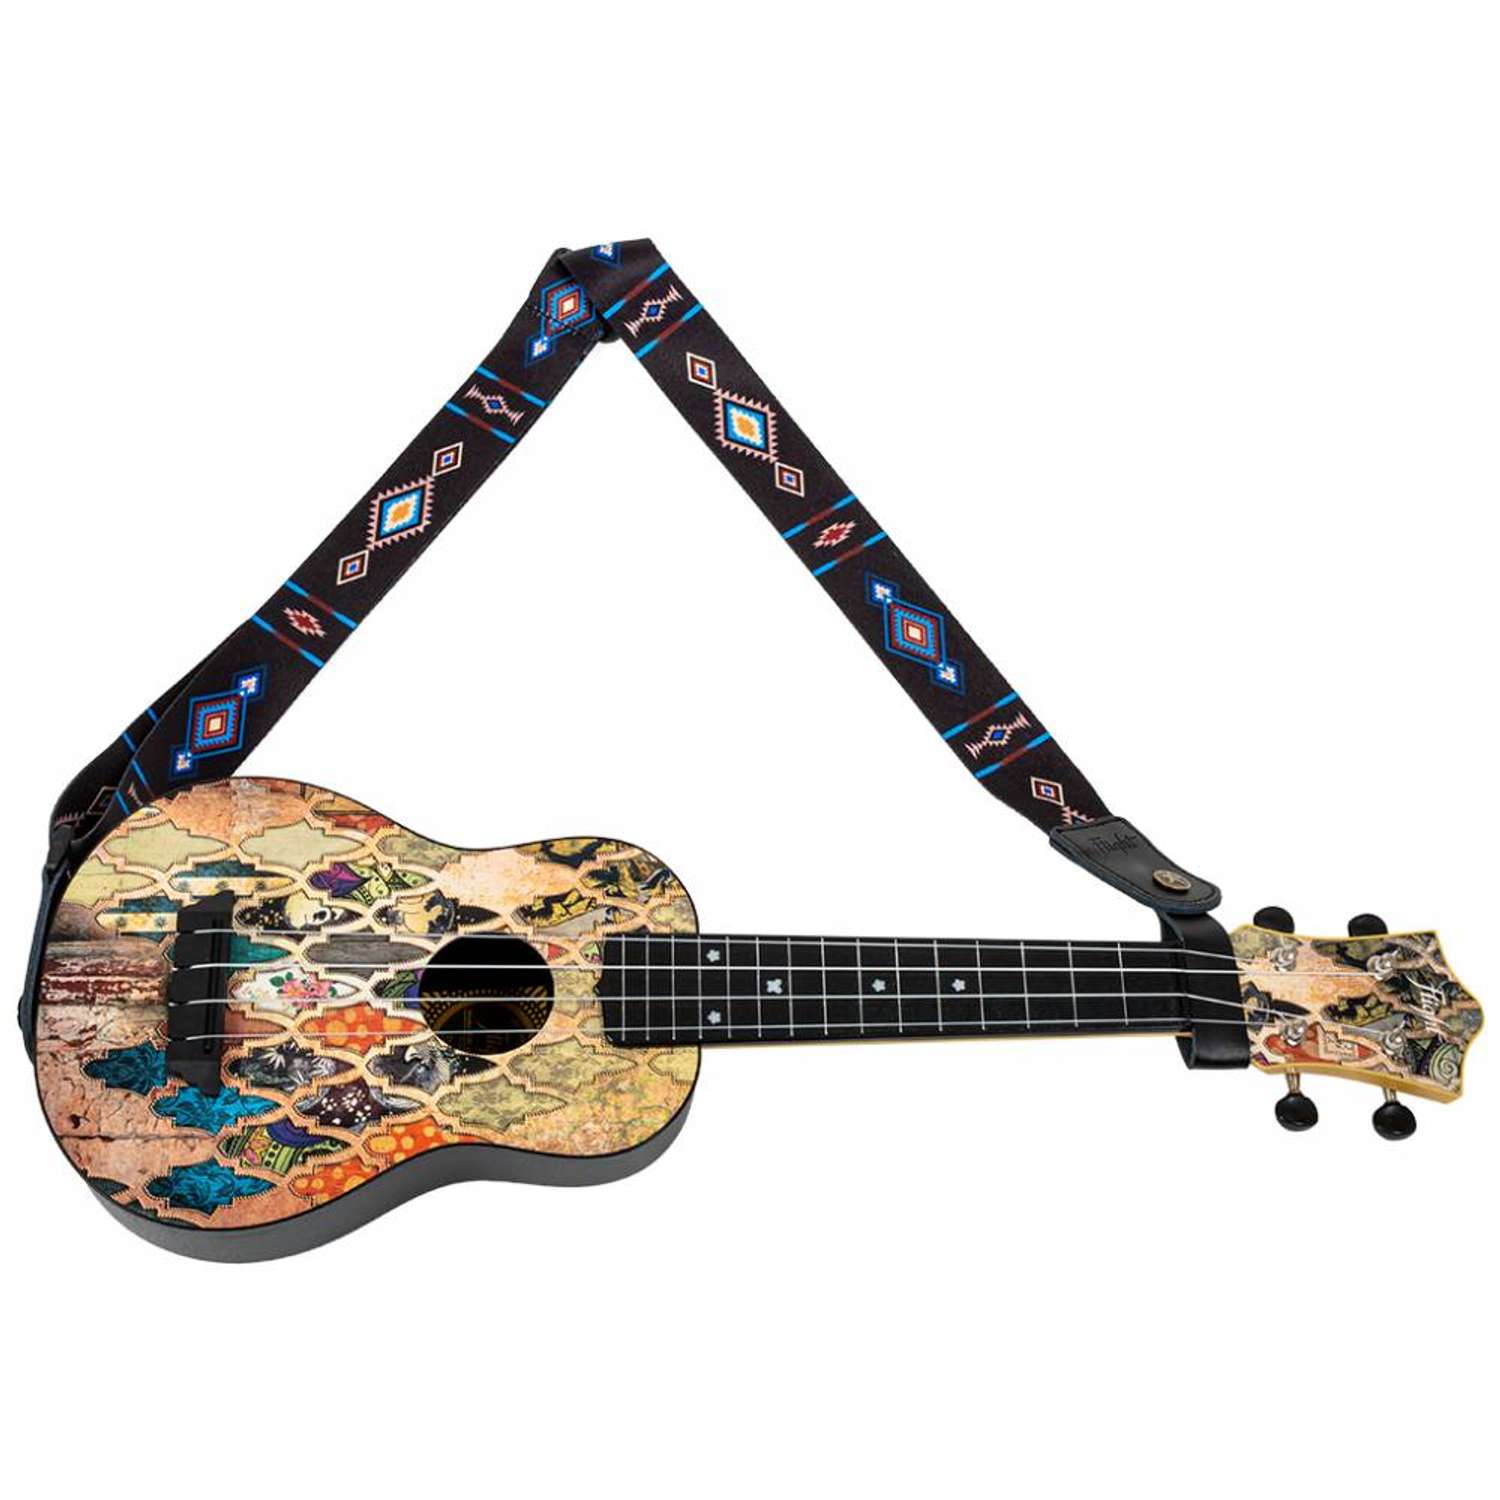 Ремень Flight S35 TEMPO для гавайской гитары укулеле материал полипропилен цвет темно-синий - фото 2